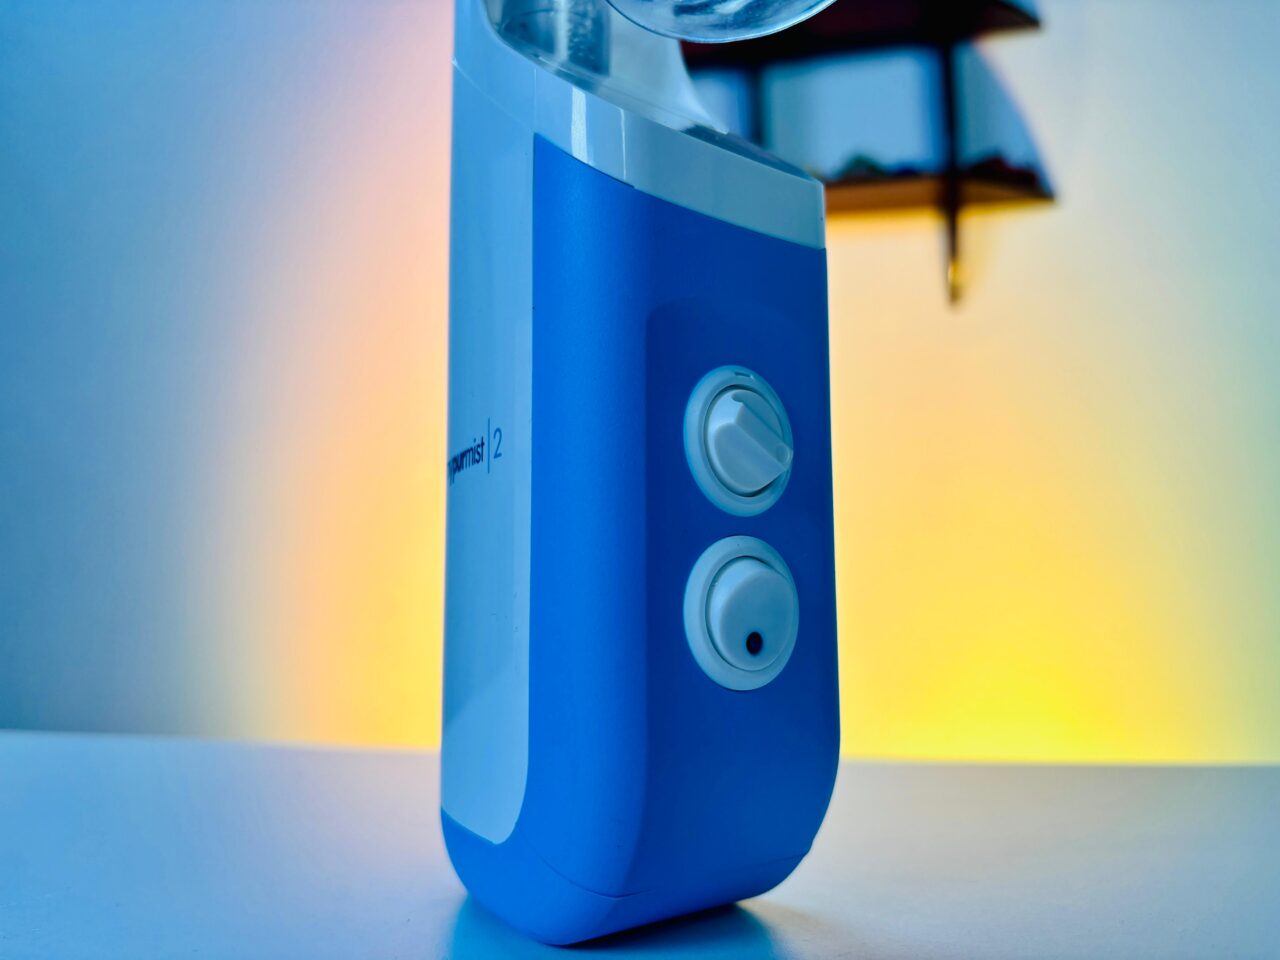 Mypurmist 2 Handheld Steam Inhaler Review